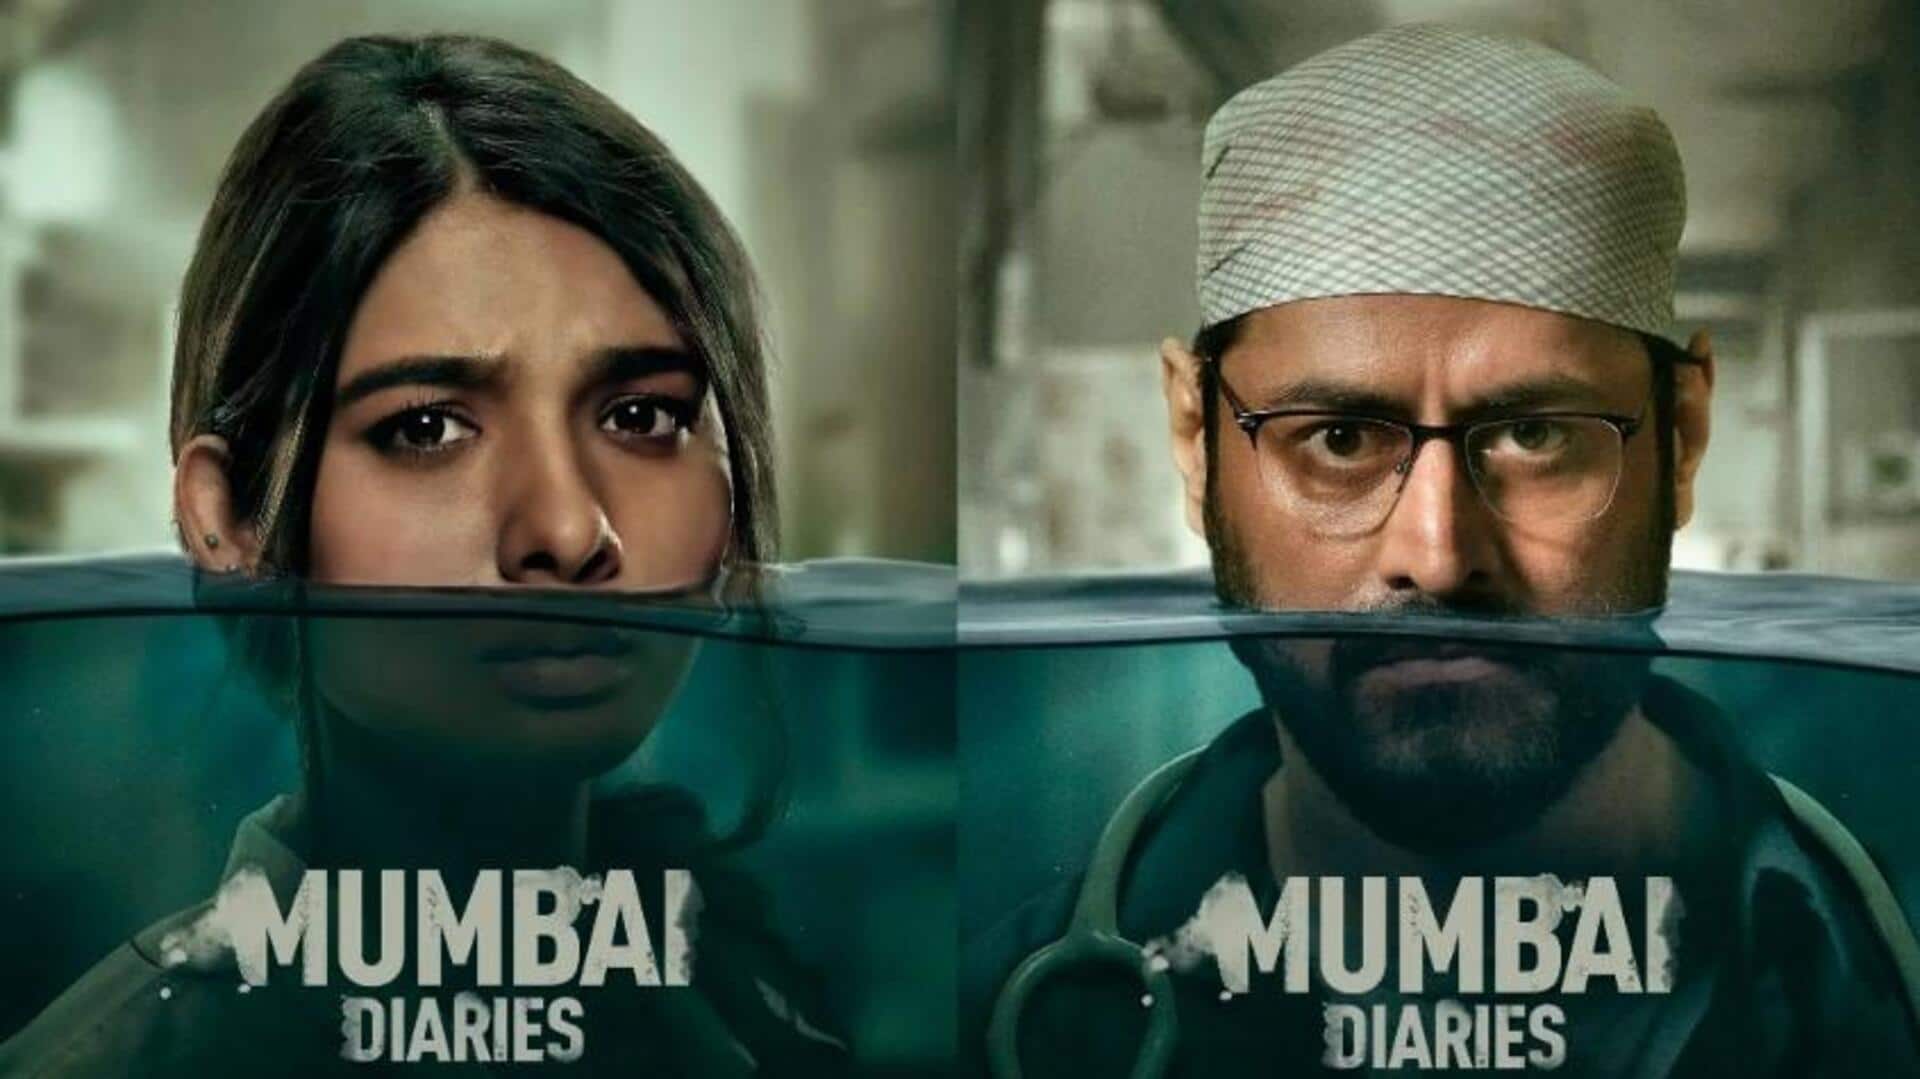 मोहित रैना की 'मुंबई डायरीज 2' का ट्रेलर जारी, जानिए कब और कहां होगी रिलीज 